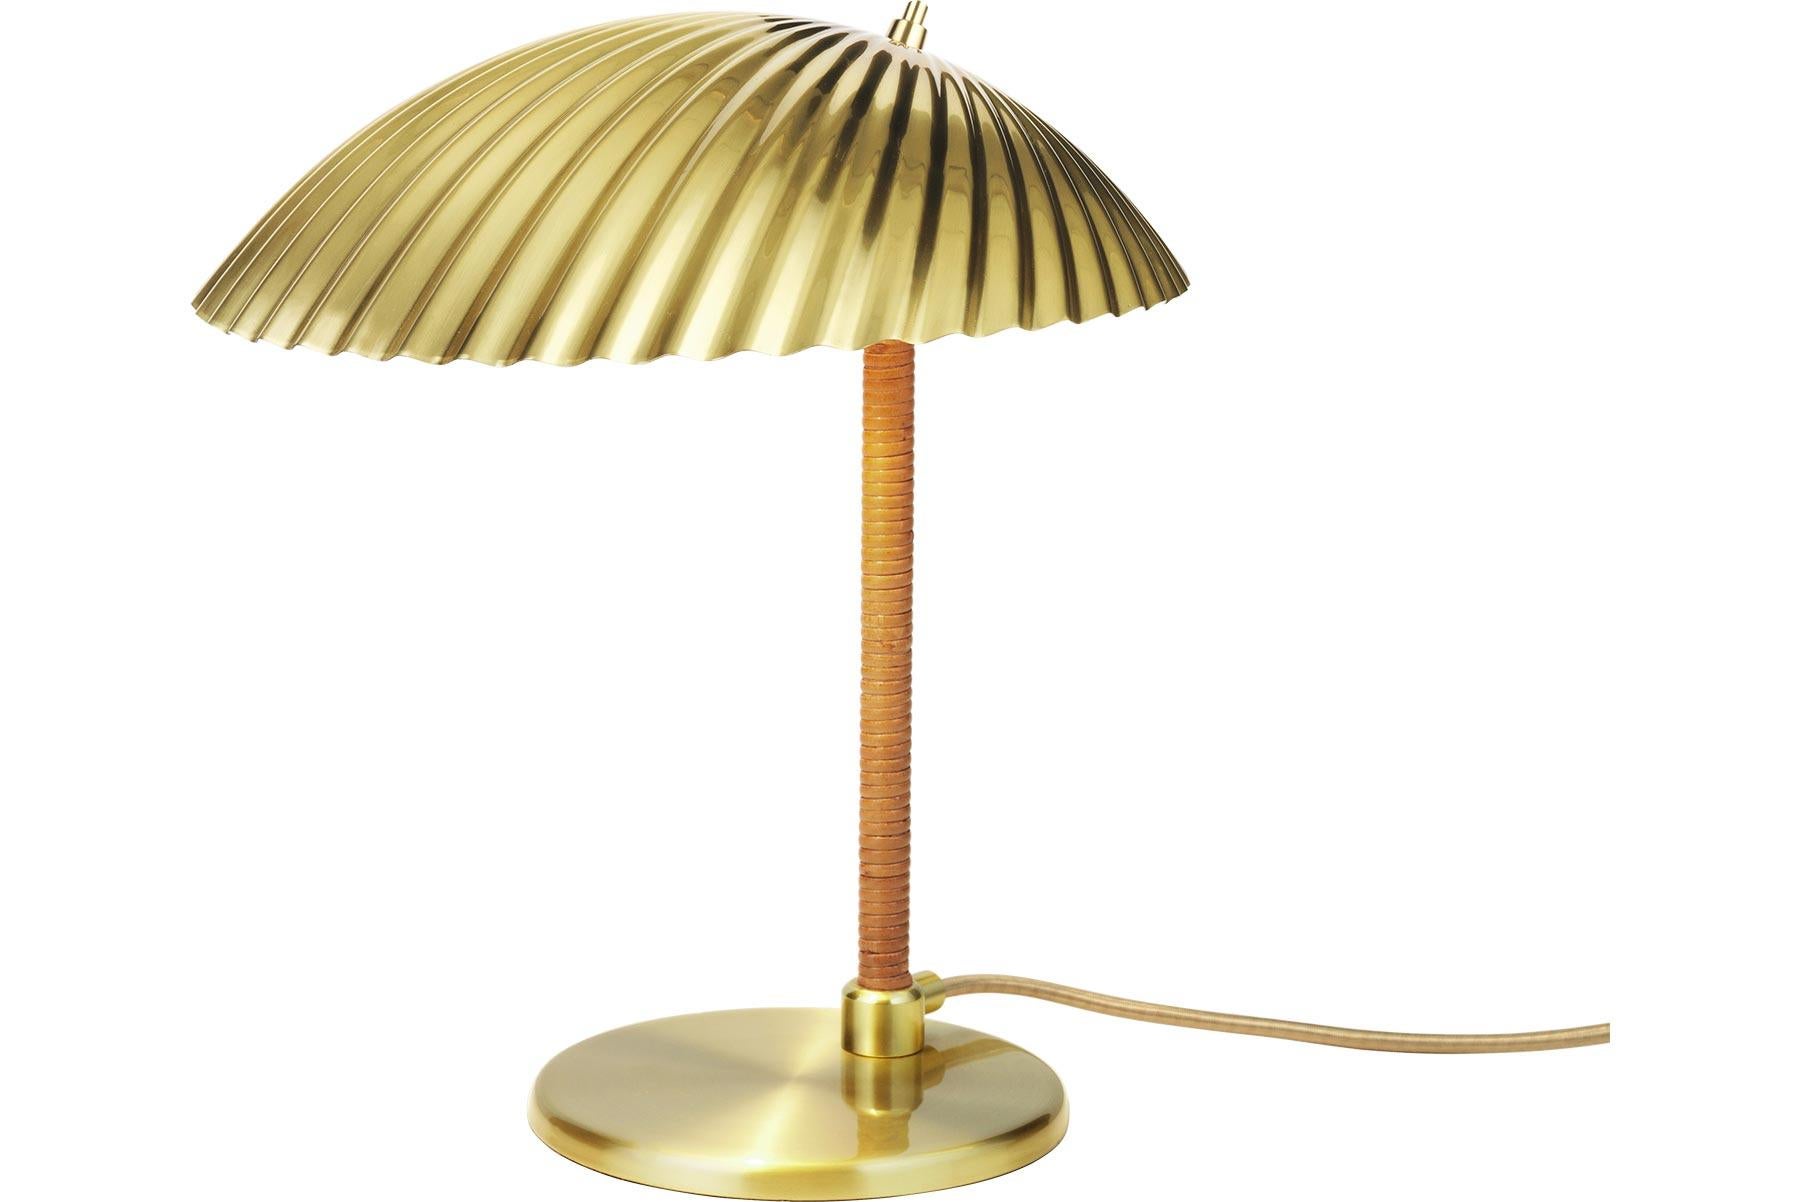 Le regard fantaisiste de Paavo Tynell sur la nature se retrouve avec grâce dans la lampe de table 5321, conçue par le designer finlandais en 1938. Sous l'abat-jour en laiton inspiré d'un coquillage, l'ampoule apparaît subtilement ; un détail